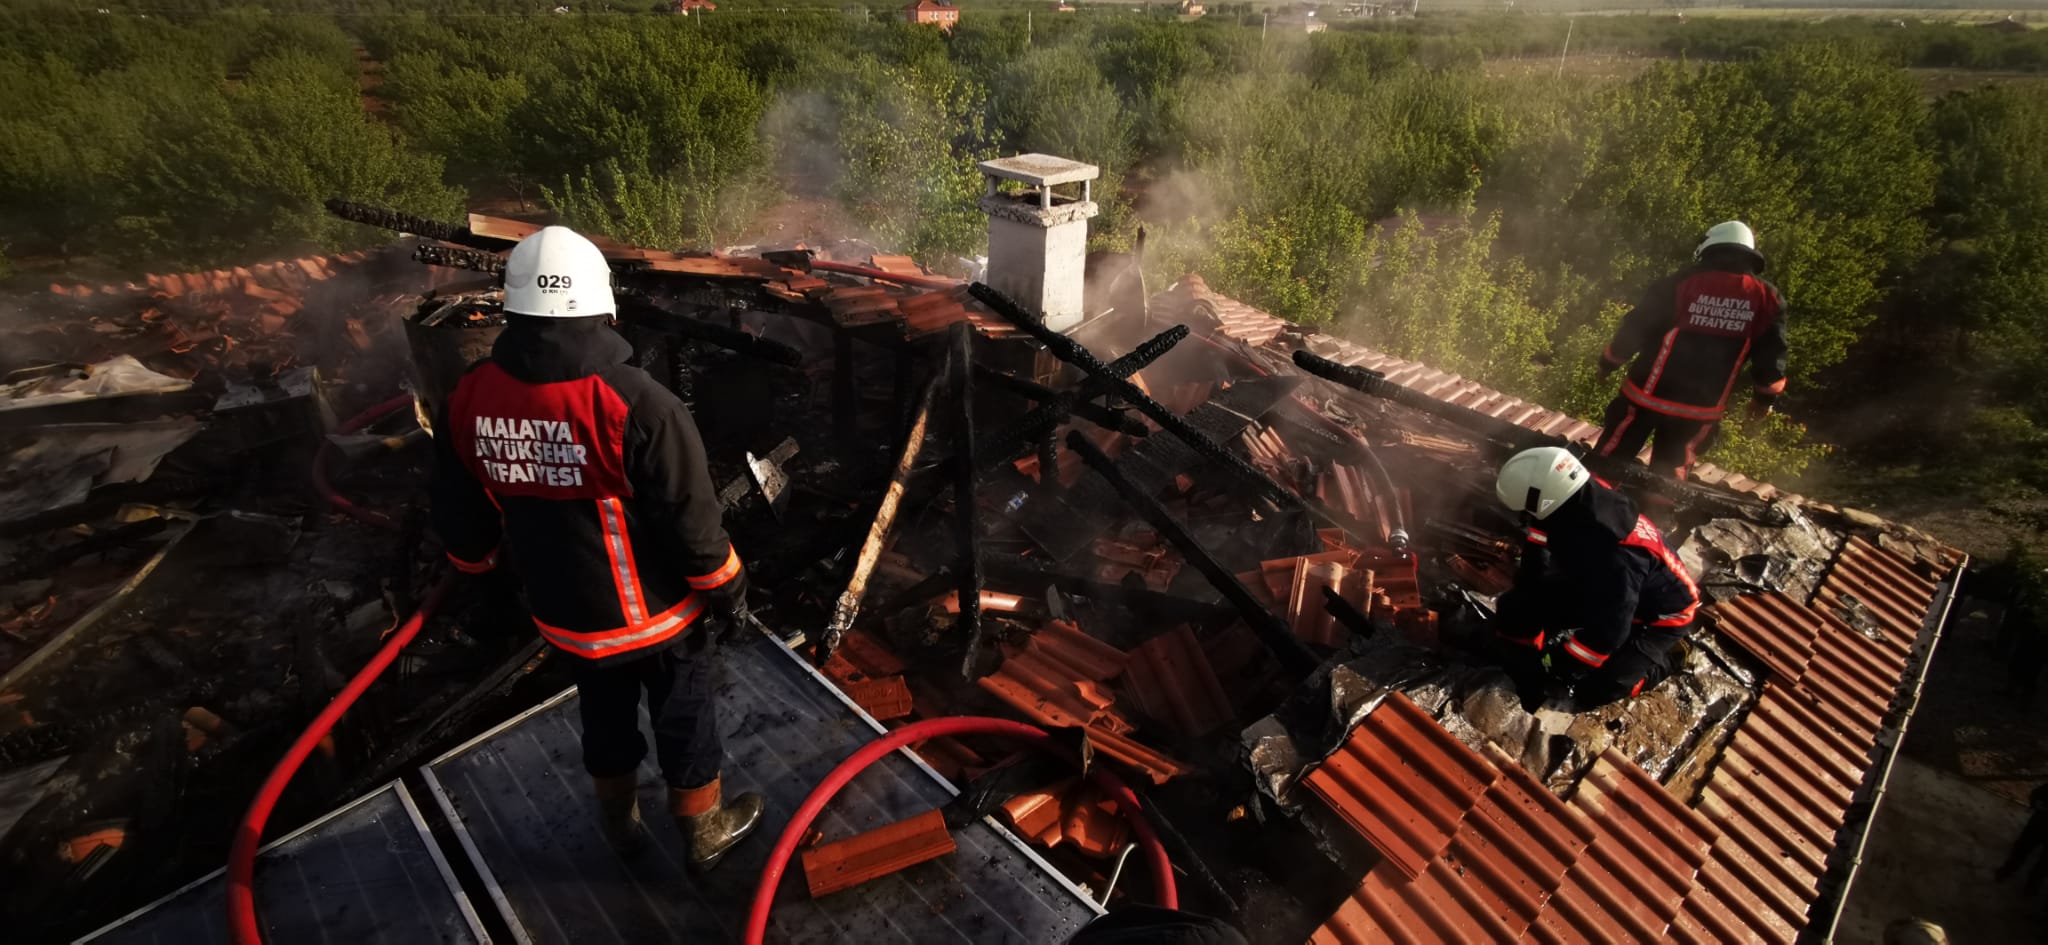 Malatya’da 2 katlı evin çatısında çıkan yangın maddi hasara neden oldu.